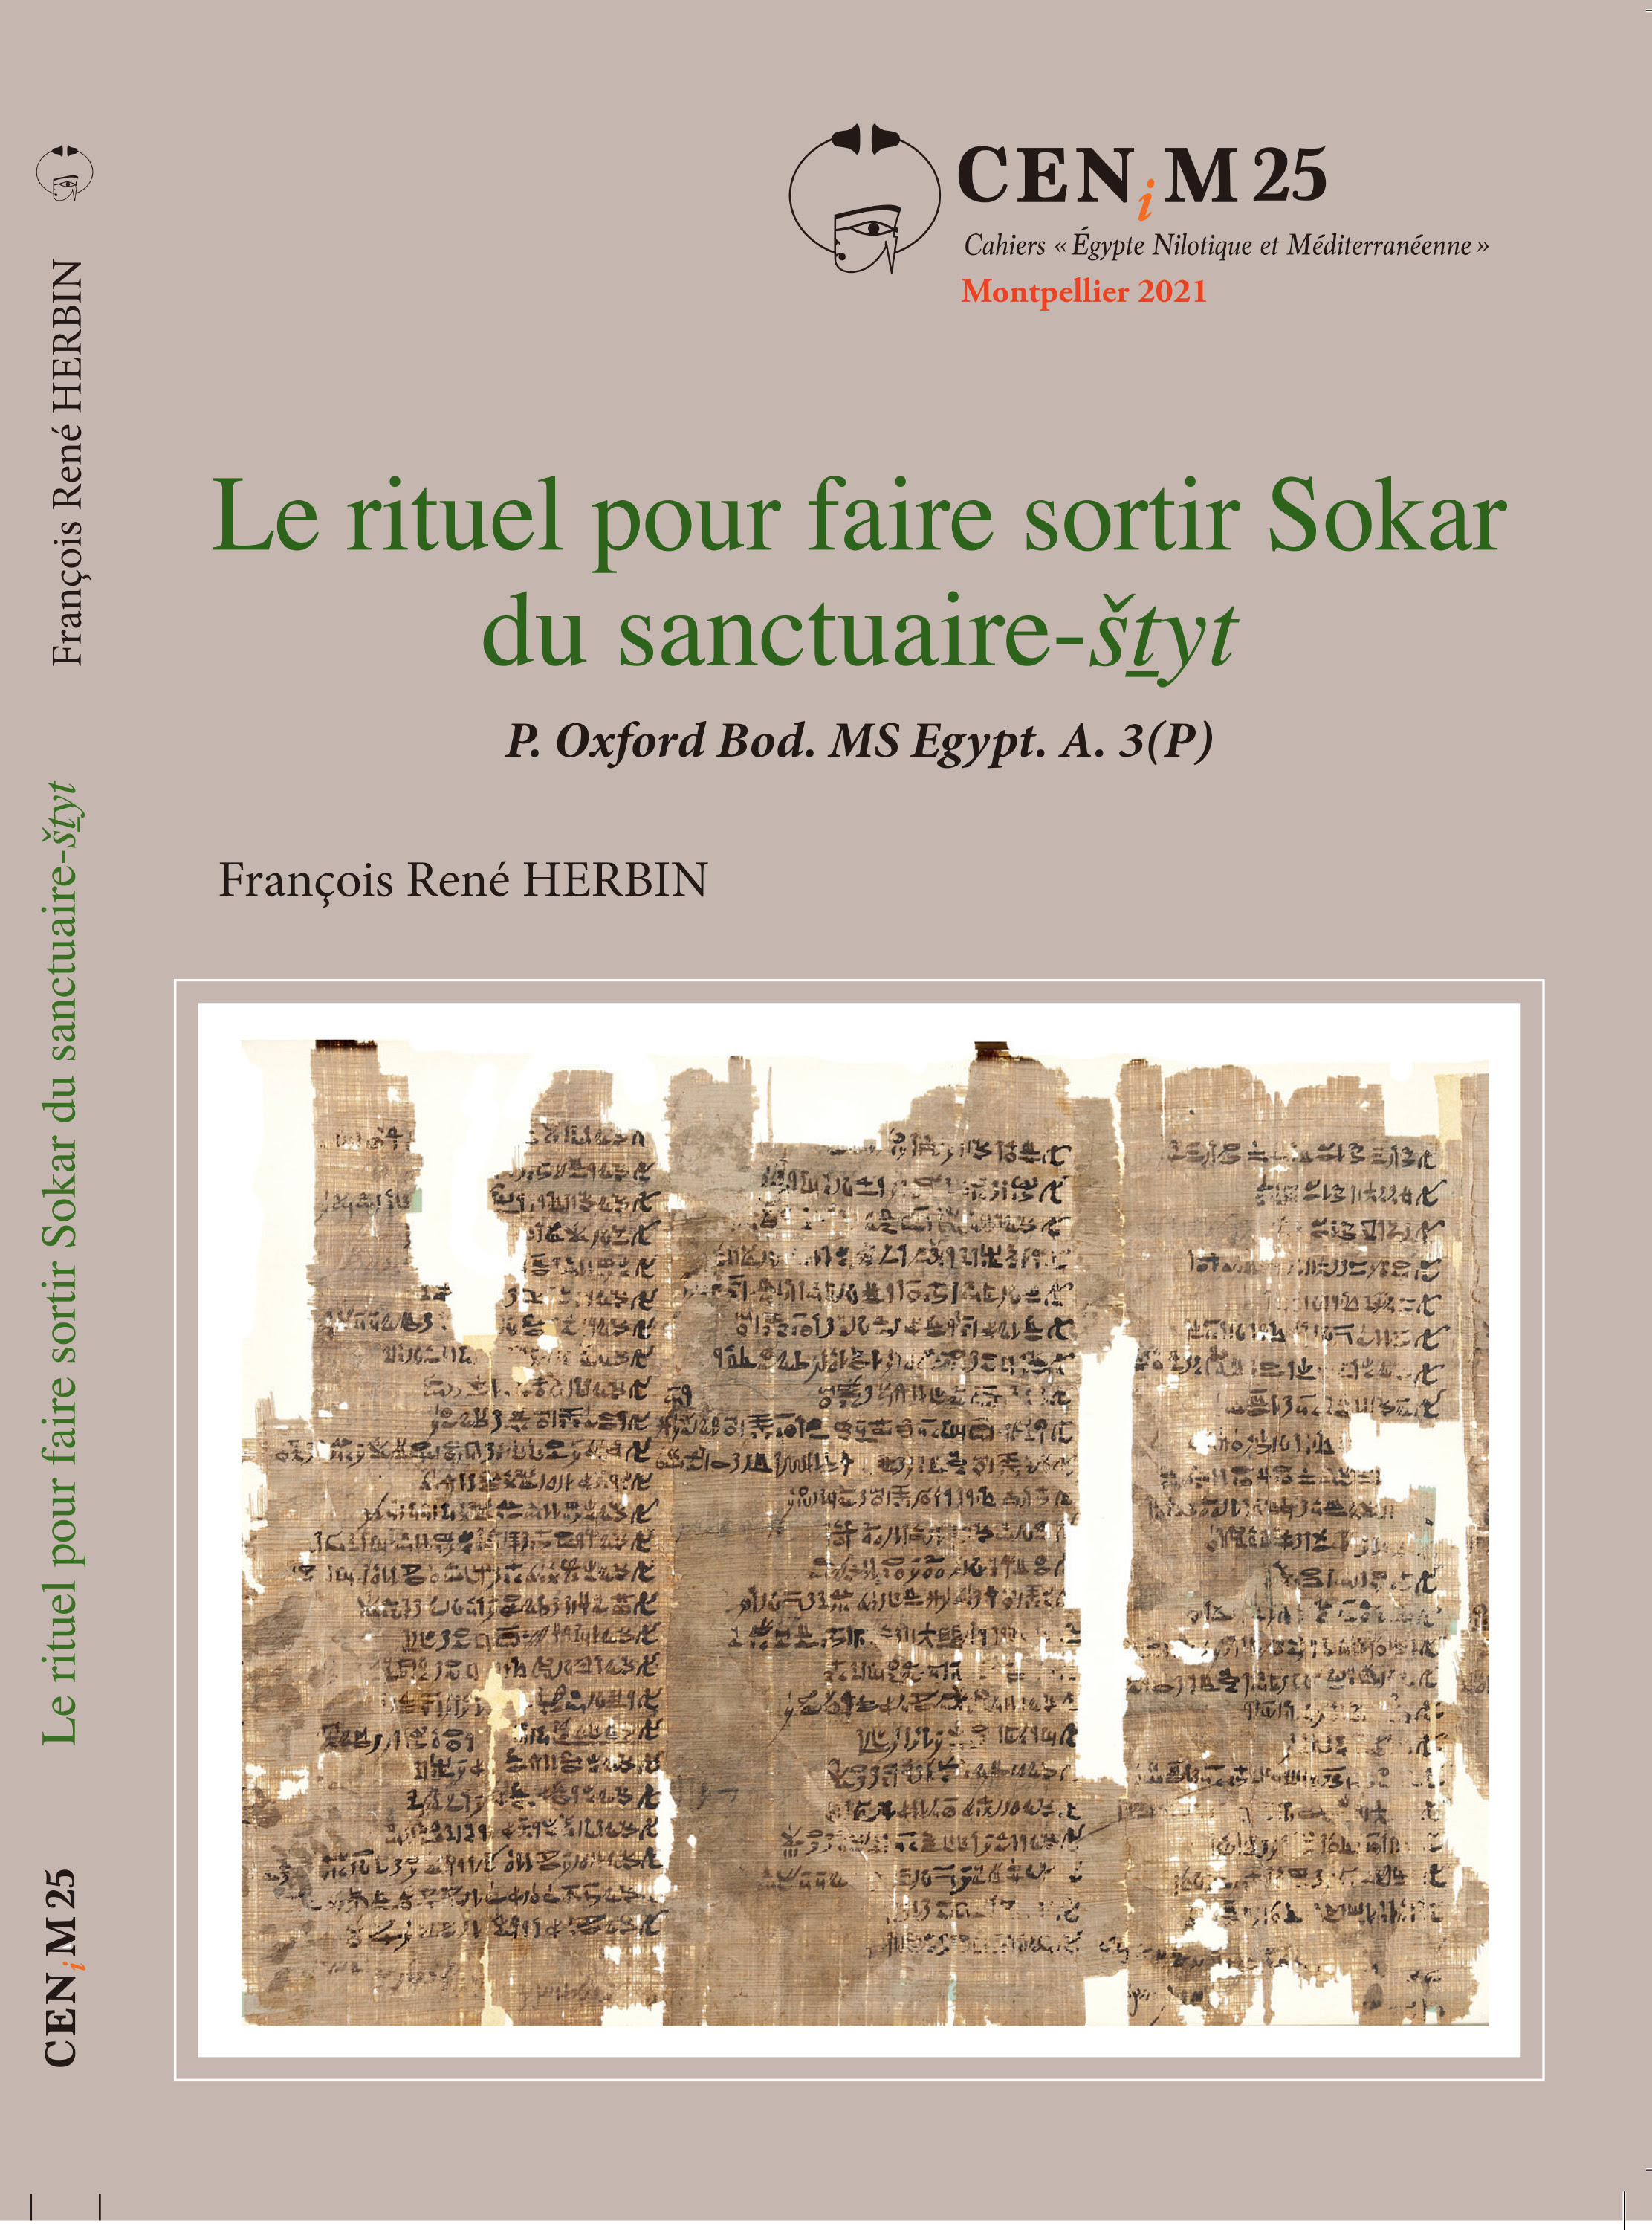 François René Herbin,  Le rituel pour faire sortir Sokar du sanctuaire-šṯyt. P. Oxford Bod. MS Egypt. A. 3(P) 